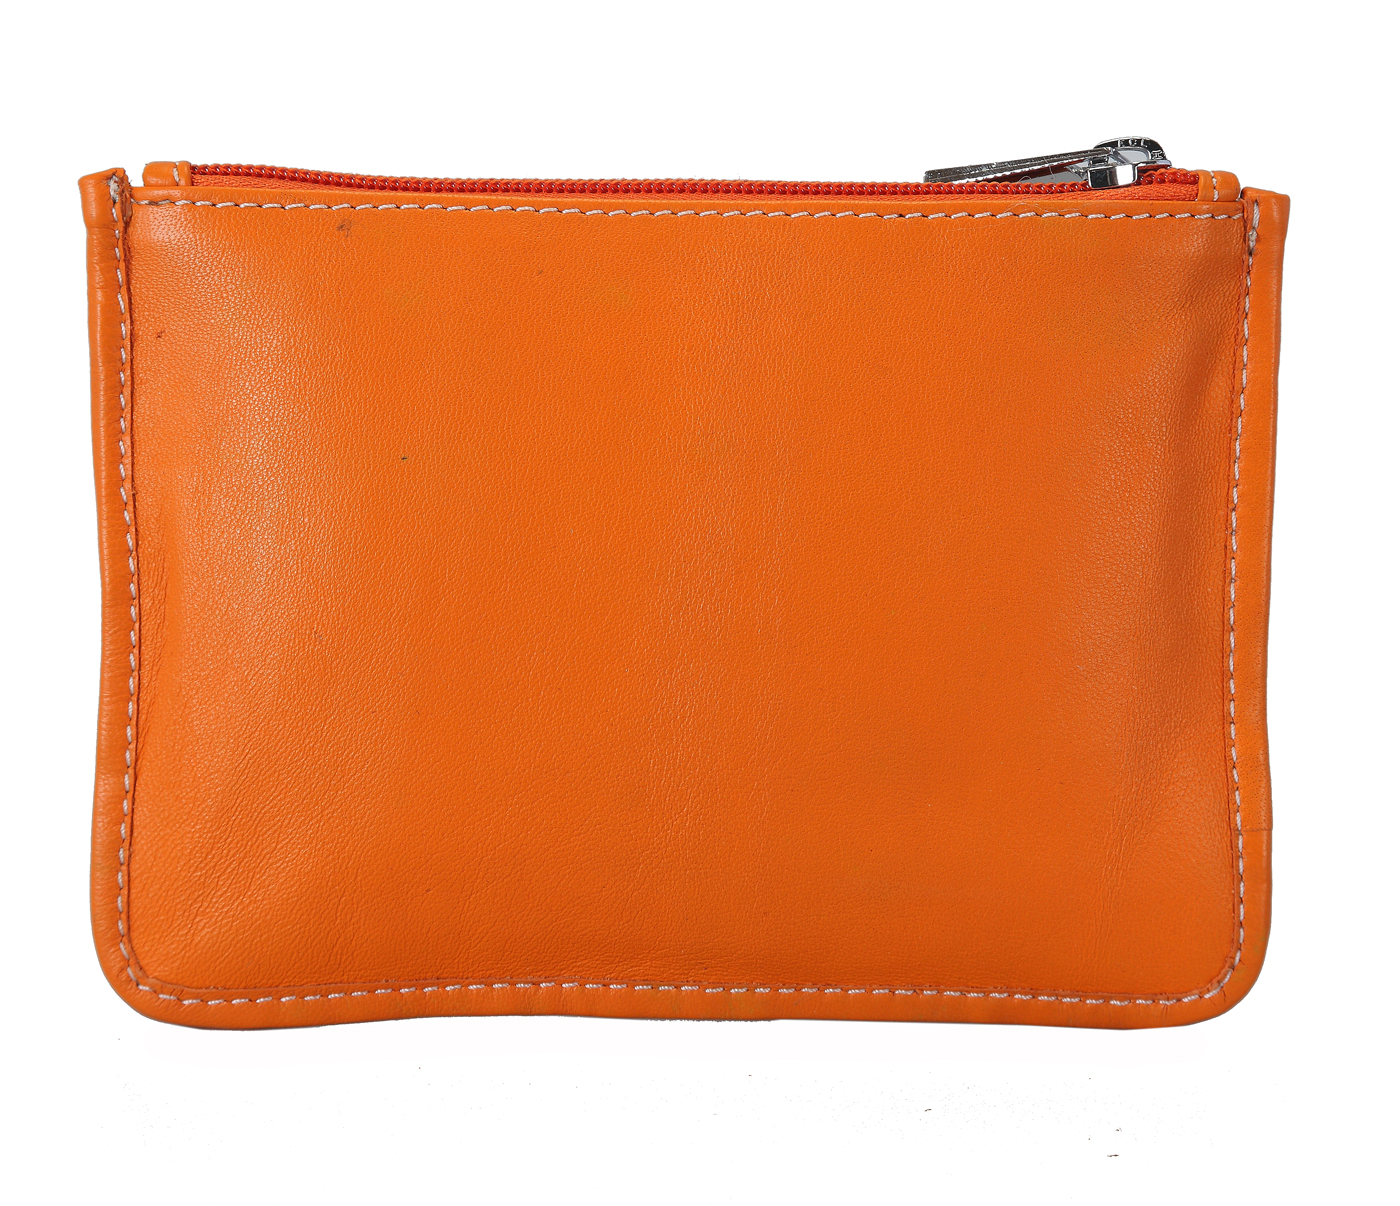 W228--Unisex multi purpose pouch in Genuine Leather - Orange